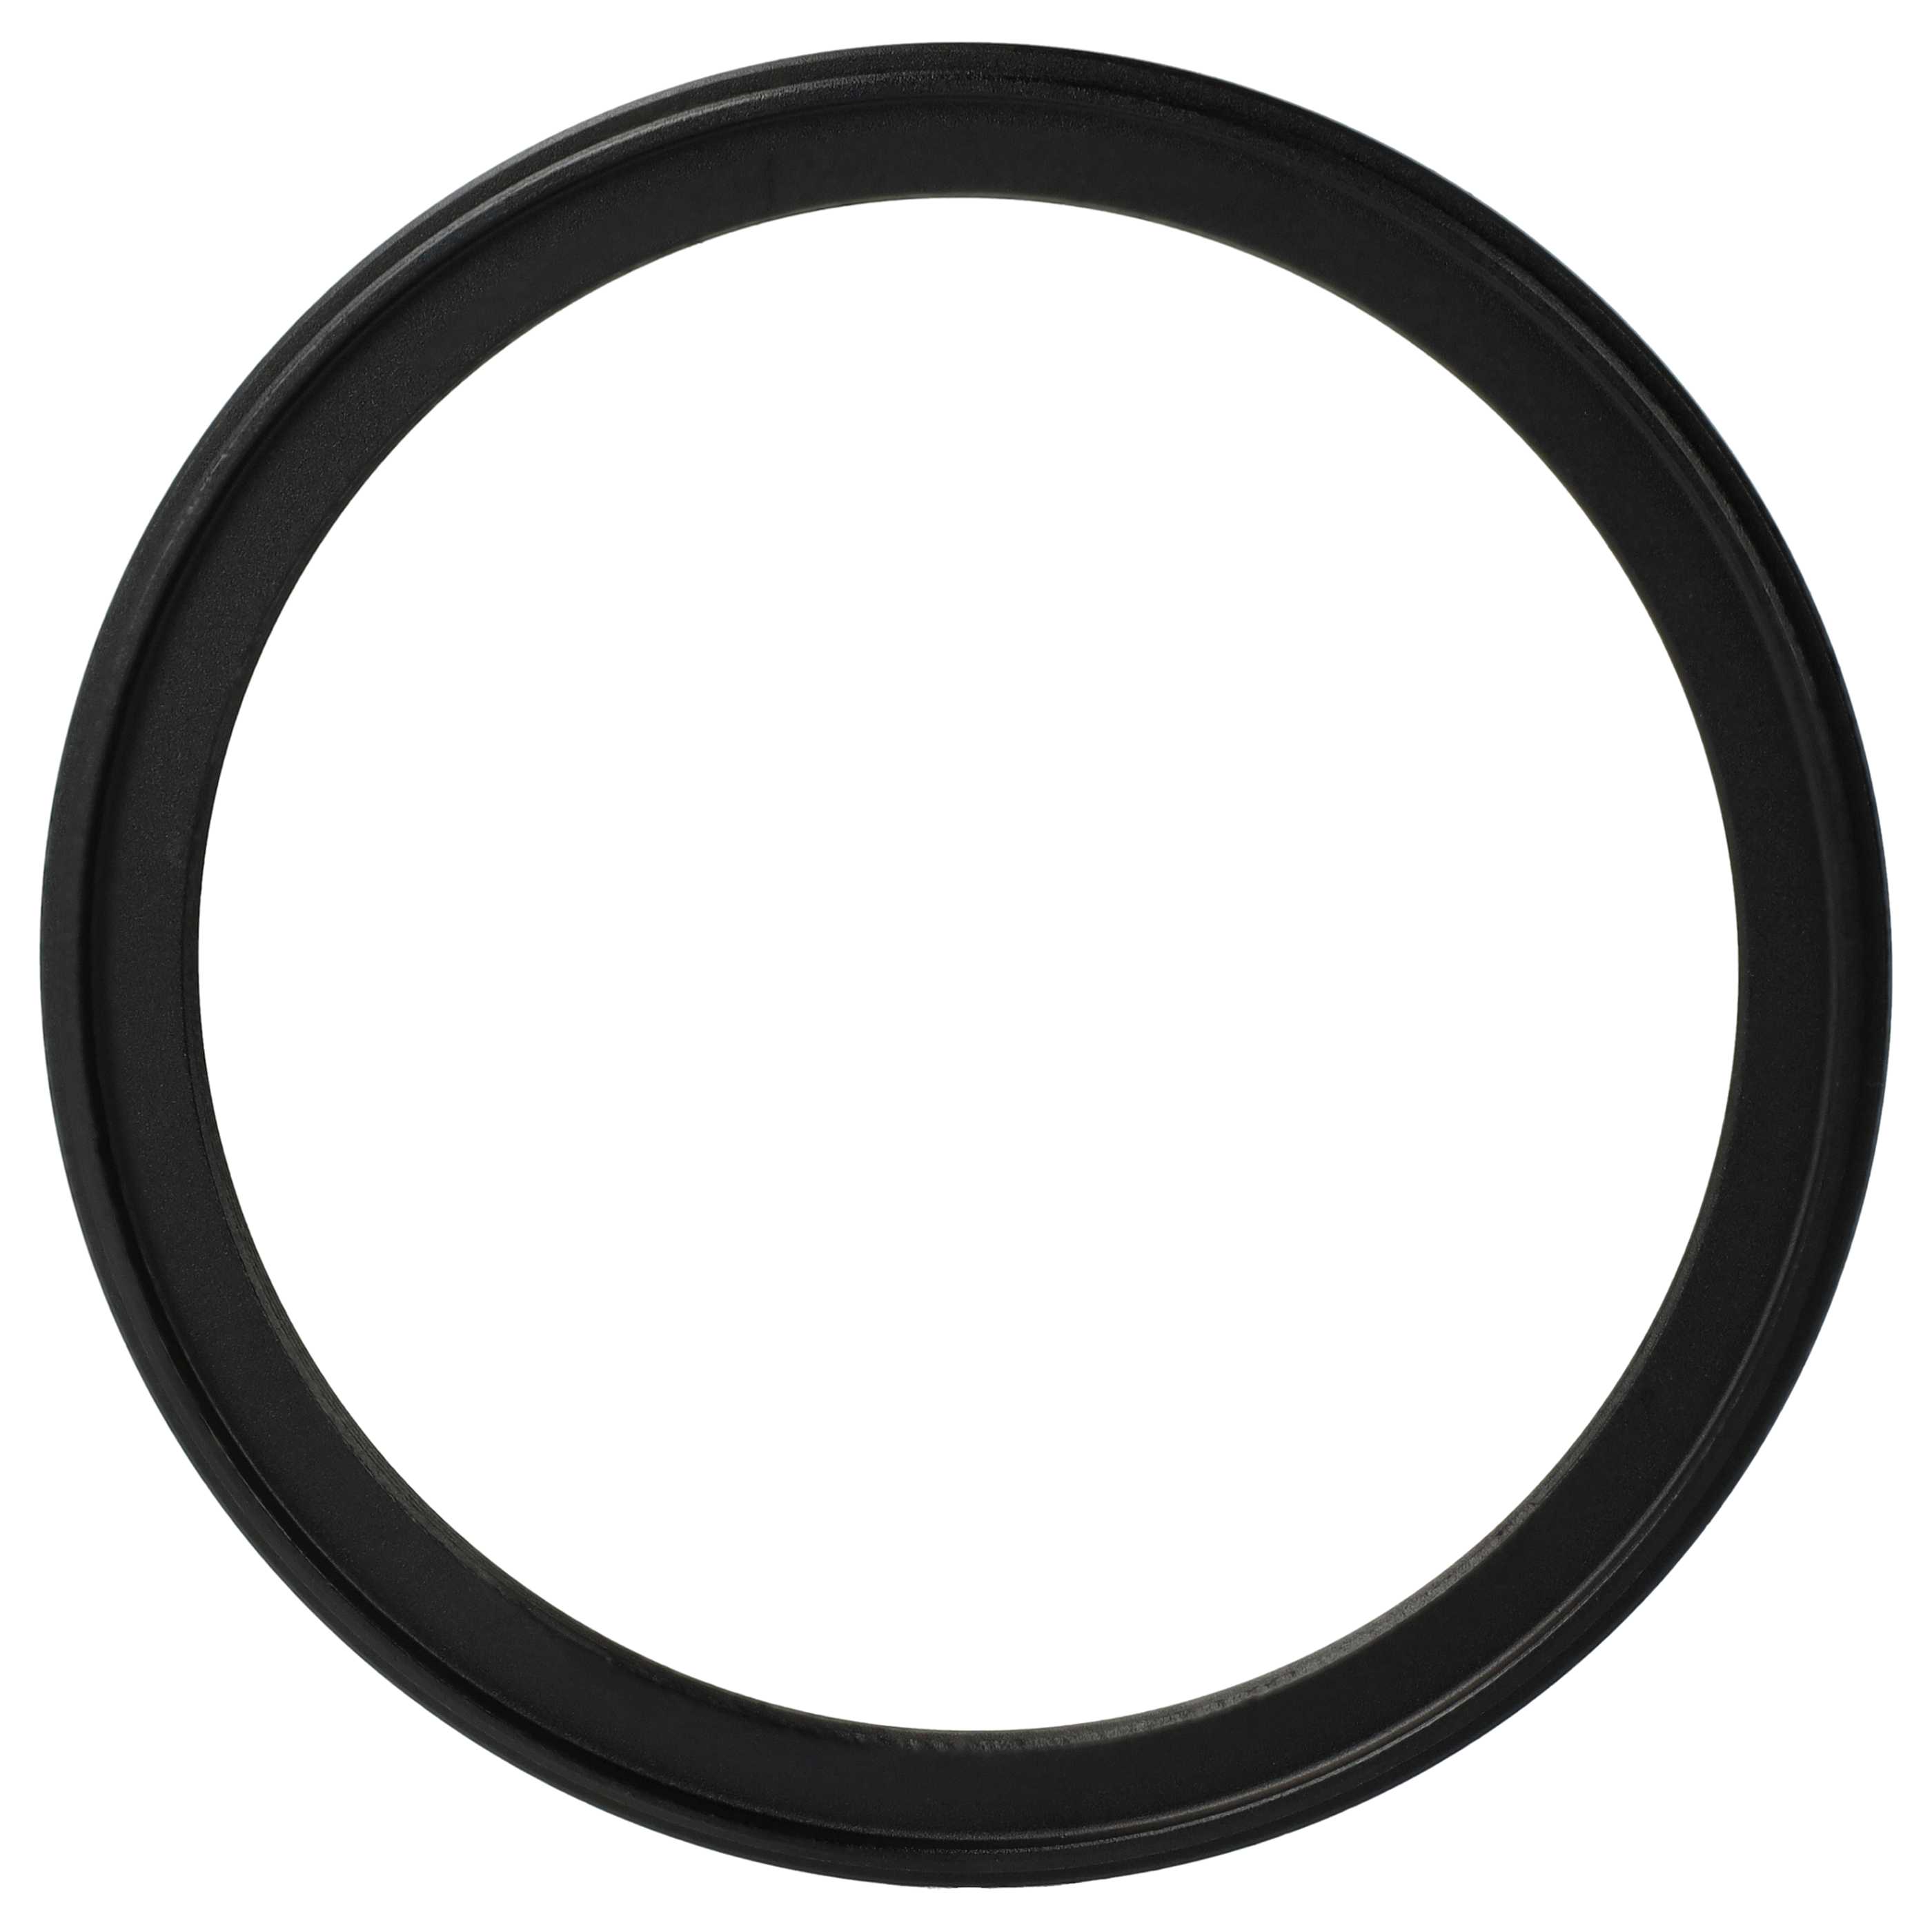 Anello adattatore step-down da 95 mm a 82 mm per obiettivo fotocamera - Adattatore filtro, metallo, nero